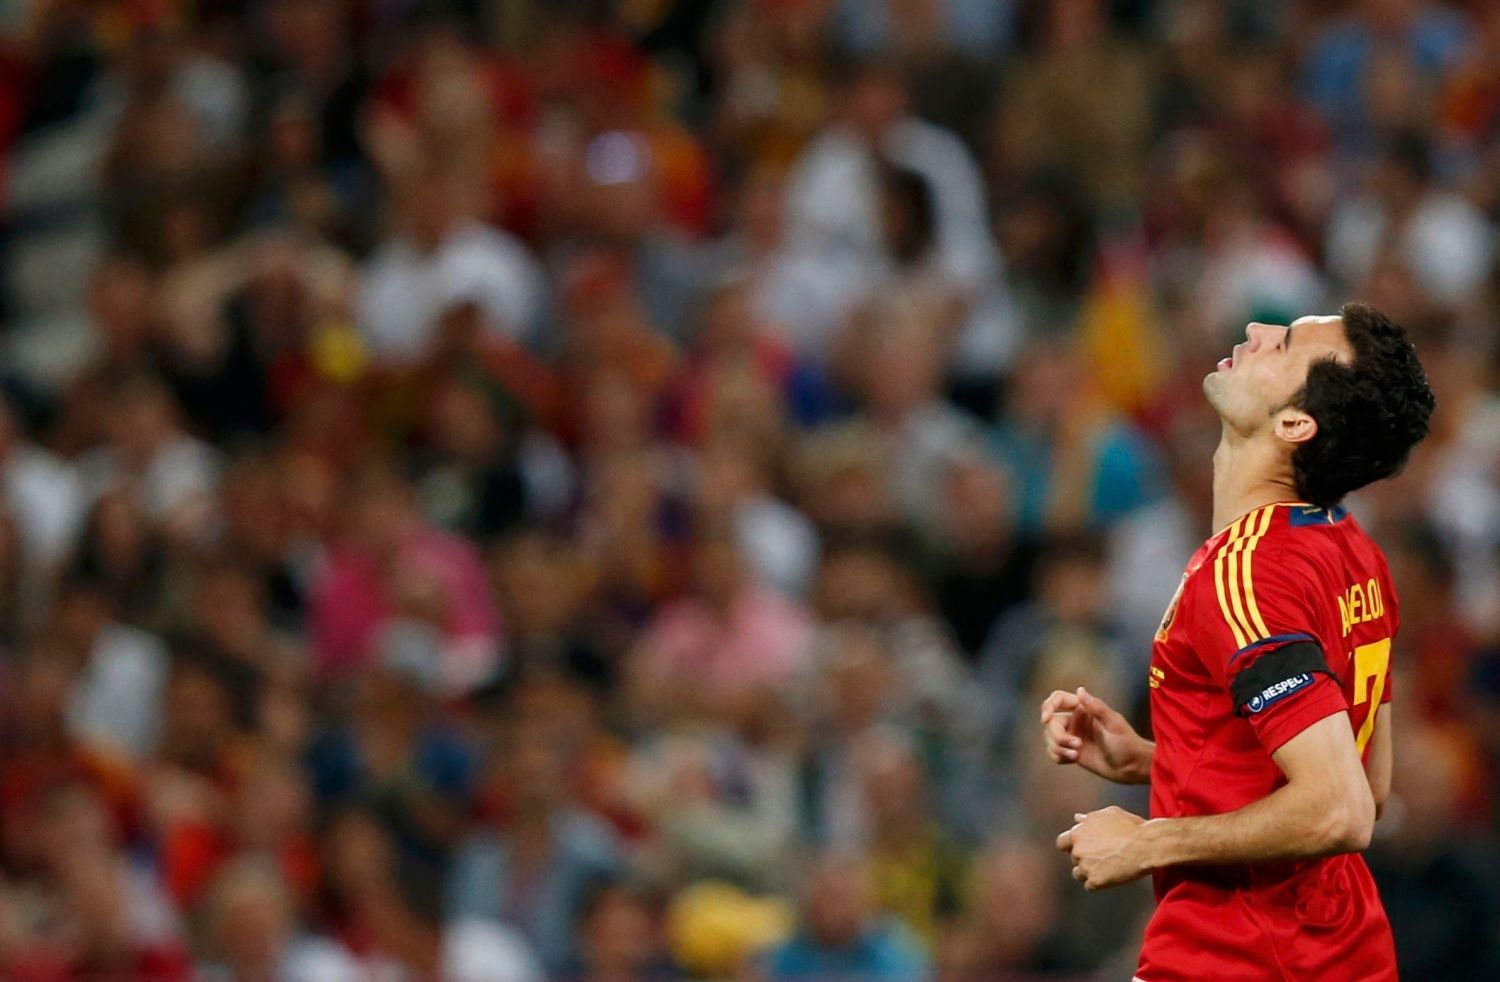 Španělský fotbalista Alvaro Arbeloa lituje nevyužité šance během semifinále na Euru 2012.